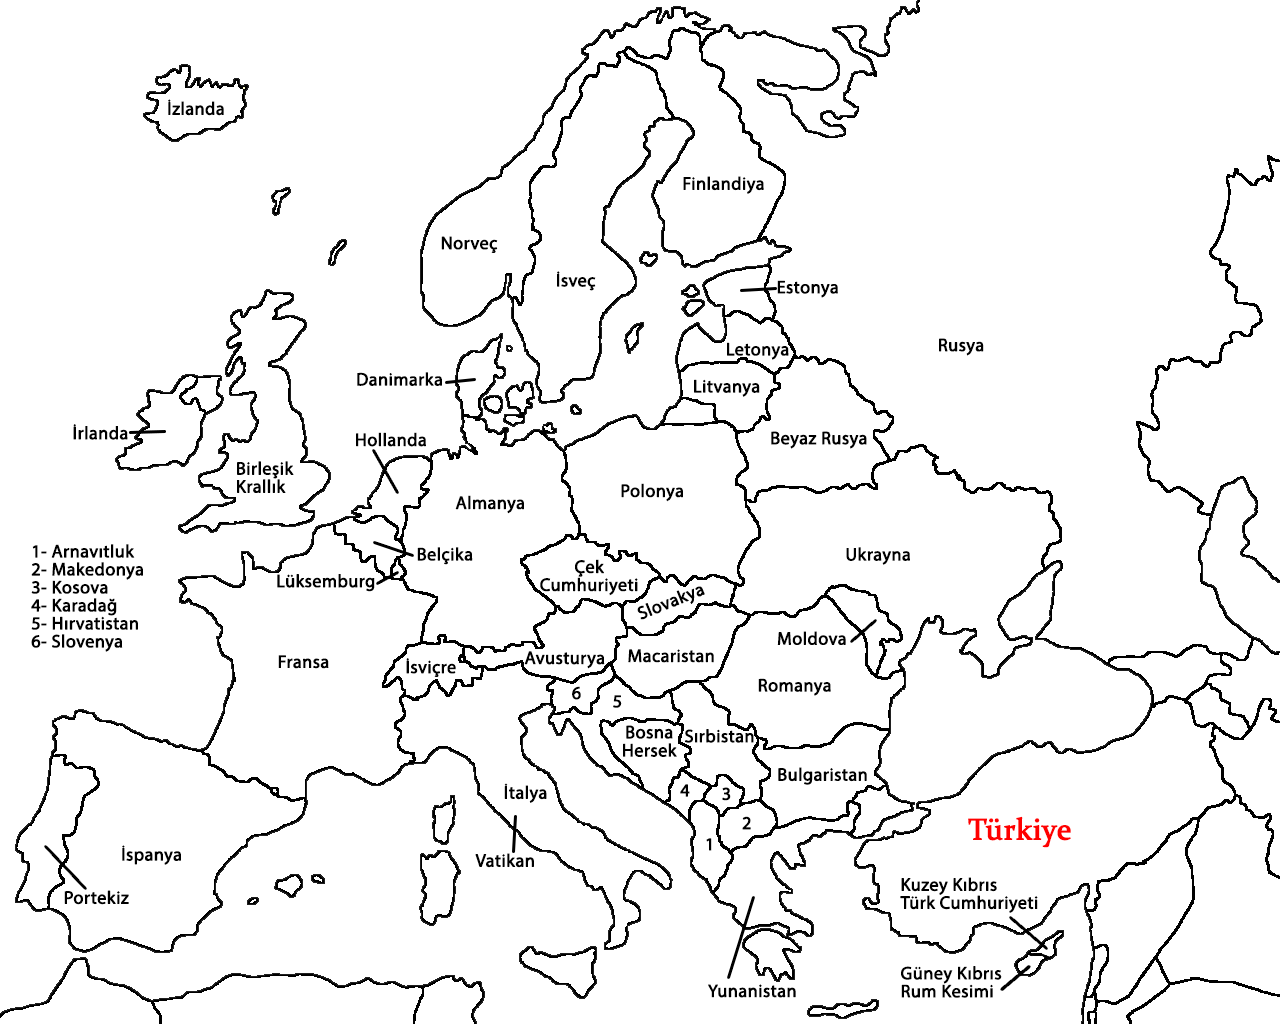 Карта западных стран с названиями. Контурная карта Европы со странами. Контурная карта Европы с границами государств и названиями. Карта Европы контурная политическая с названиями. Контурная политическая карта Европы с границами государств.